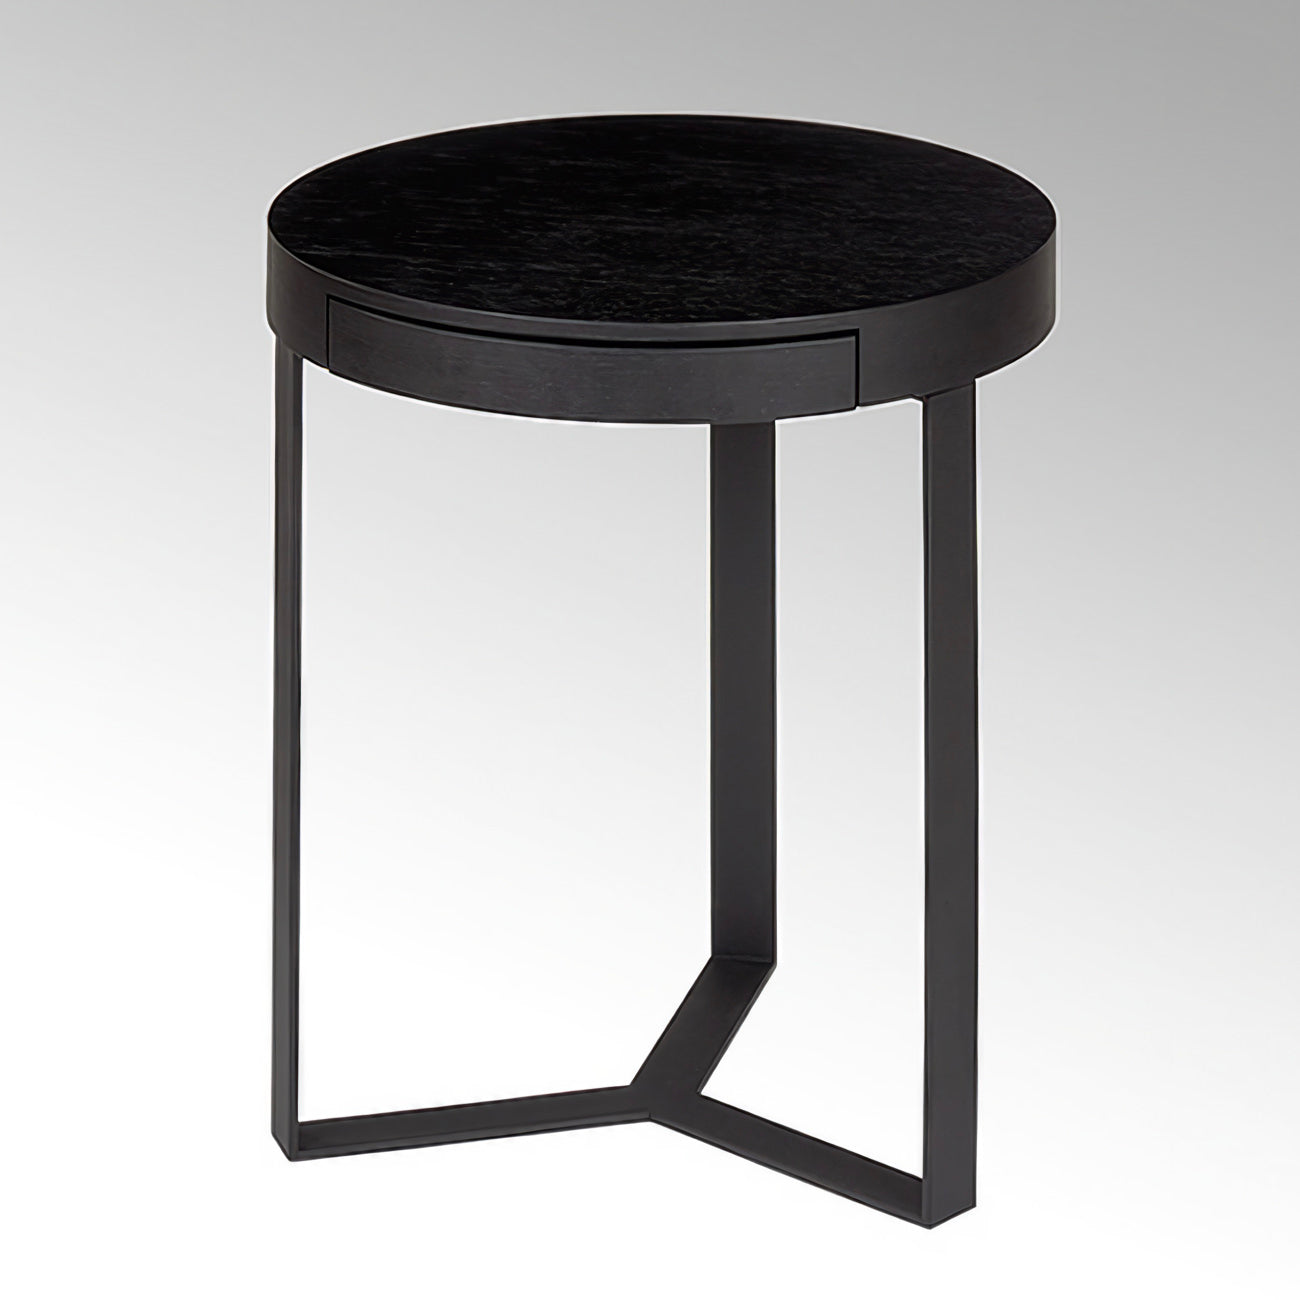 HARRY BLACK Side Table by Lambert